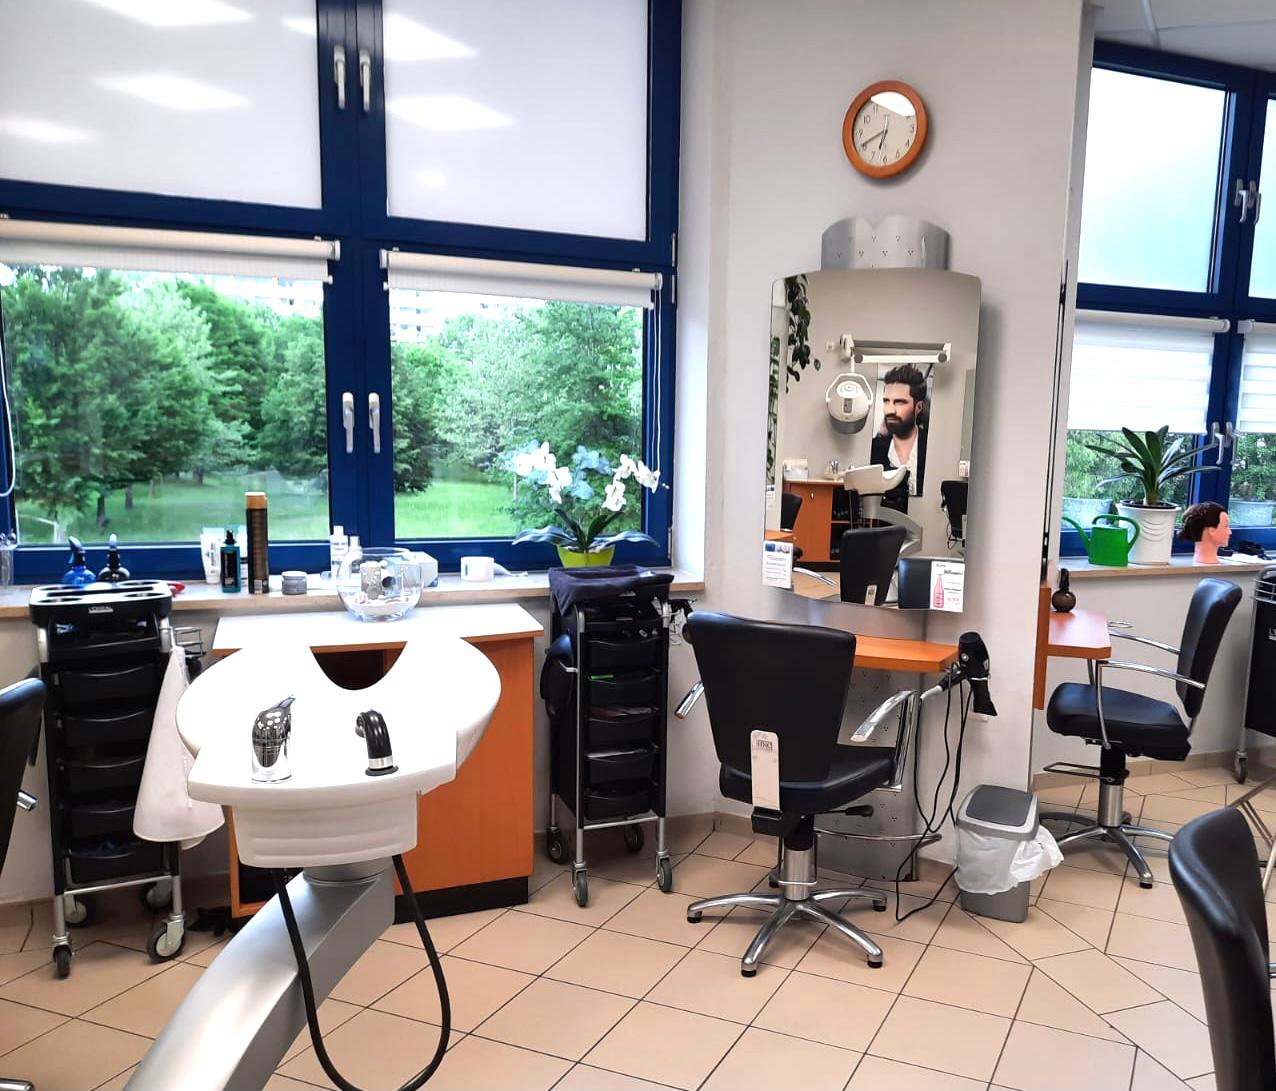 Salon Beauty – Ihr Friseur in Chemnitz, Alfred-Neubert-Straße 17 in Chemnitz